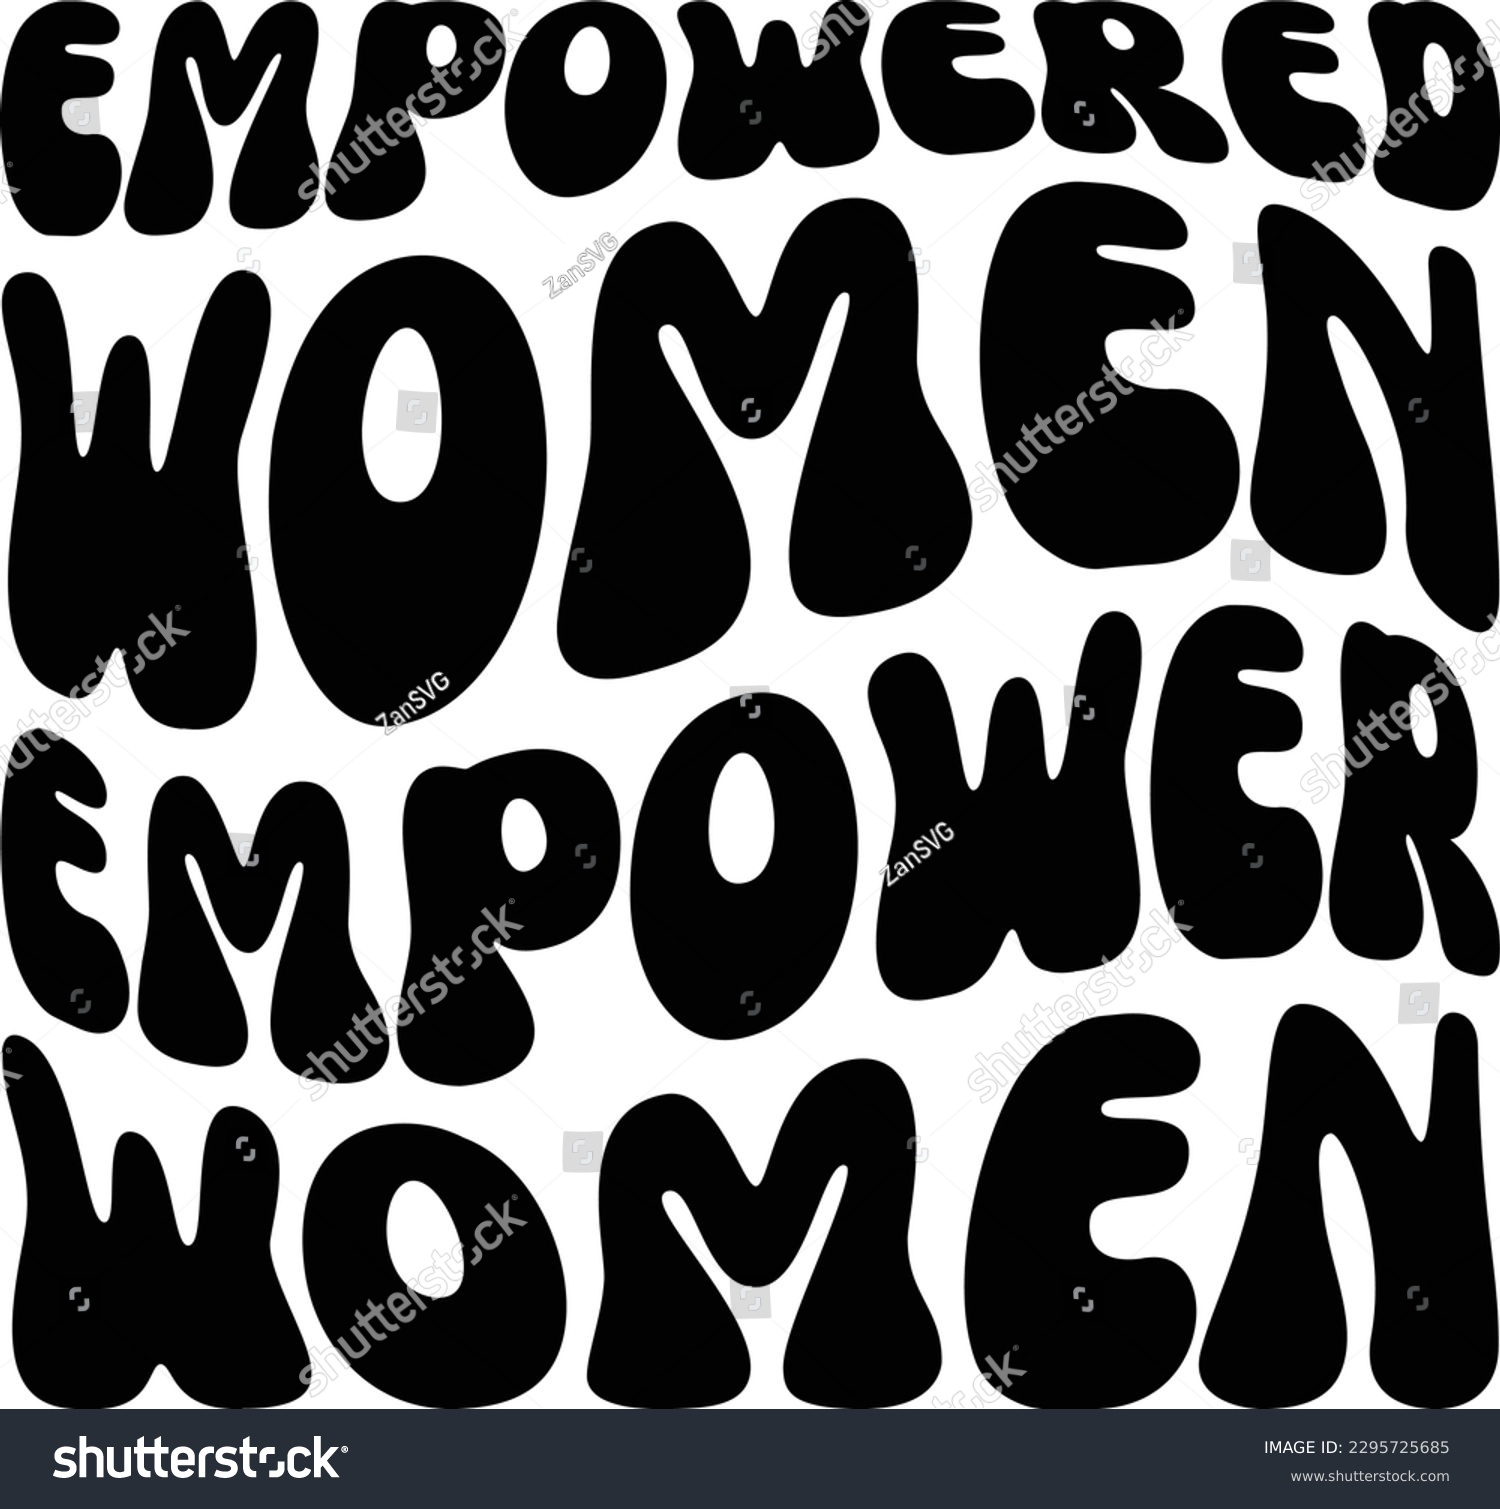 SVG of Empowered women empower women svg file svg